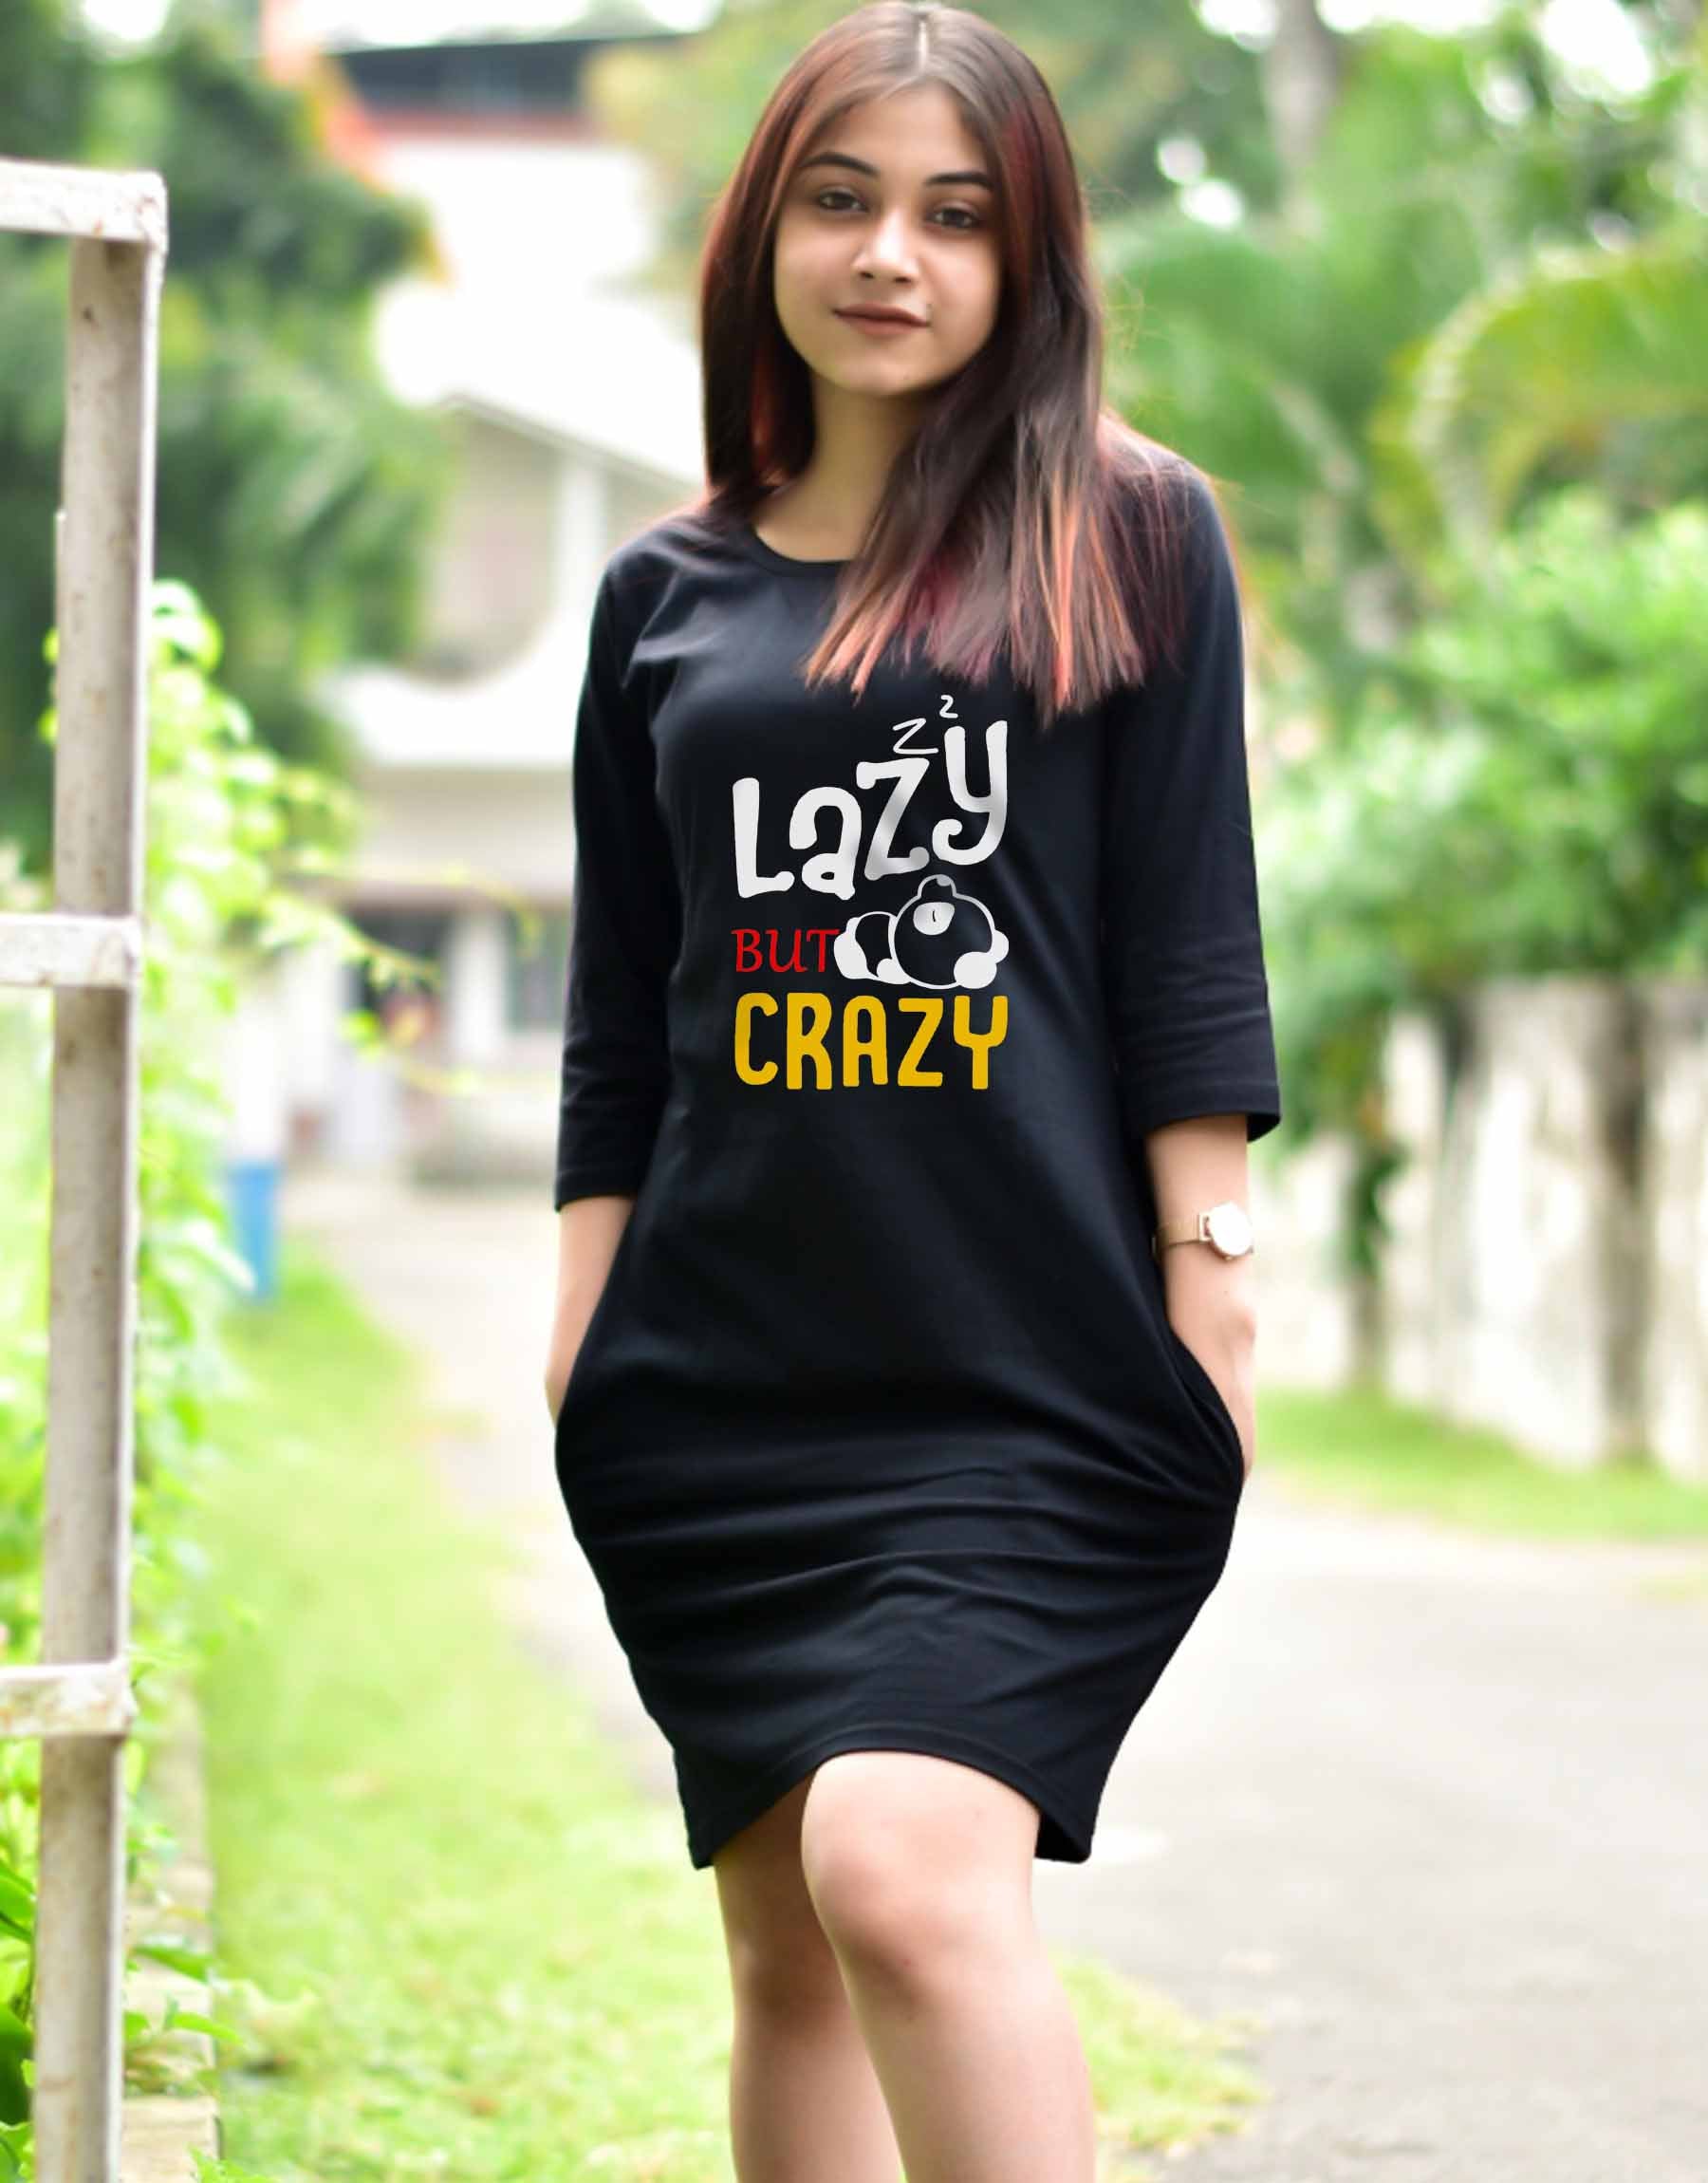 Lazy But Crazy - TShirt Dress For Women - 699.00 - TEEGURUJI - Free Shipping